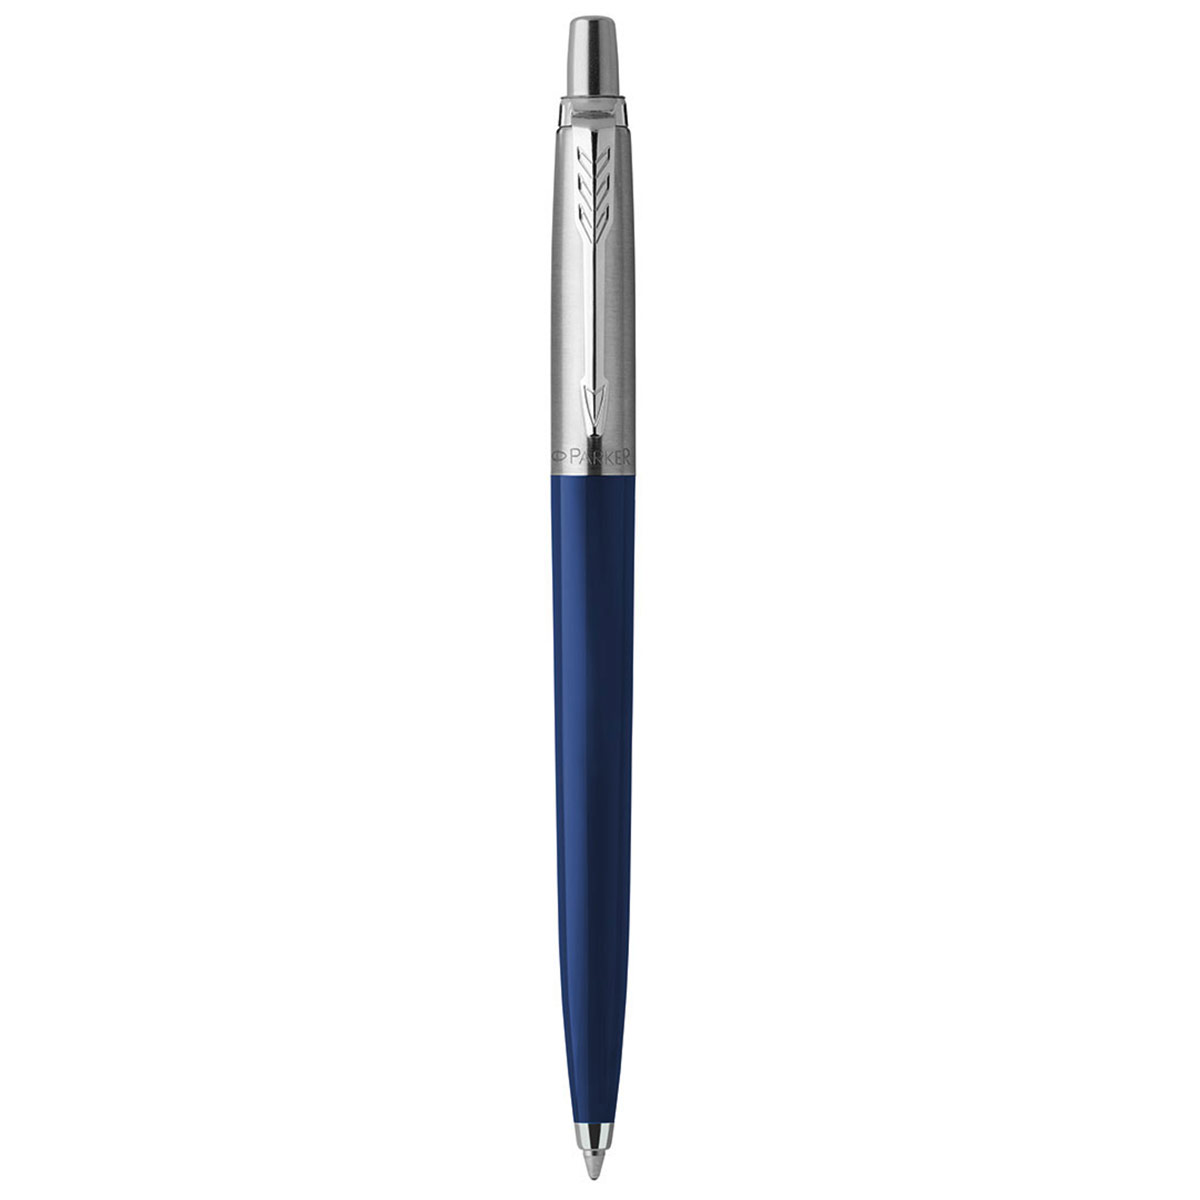 PARKER Ручка шариковая Parker Jotter Orig с пластиковым корпусом. Линия письма средняя, цвет синий. В блистере 0.7 мм 2123427 синие чернила Navy Blue Фото 1.